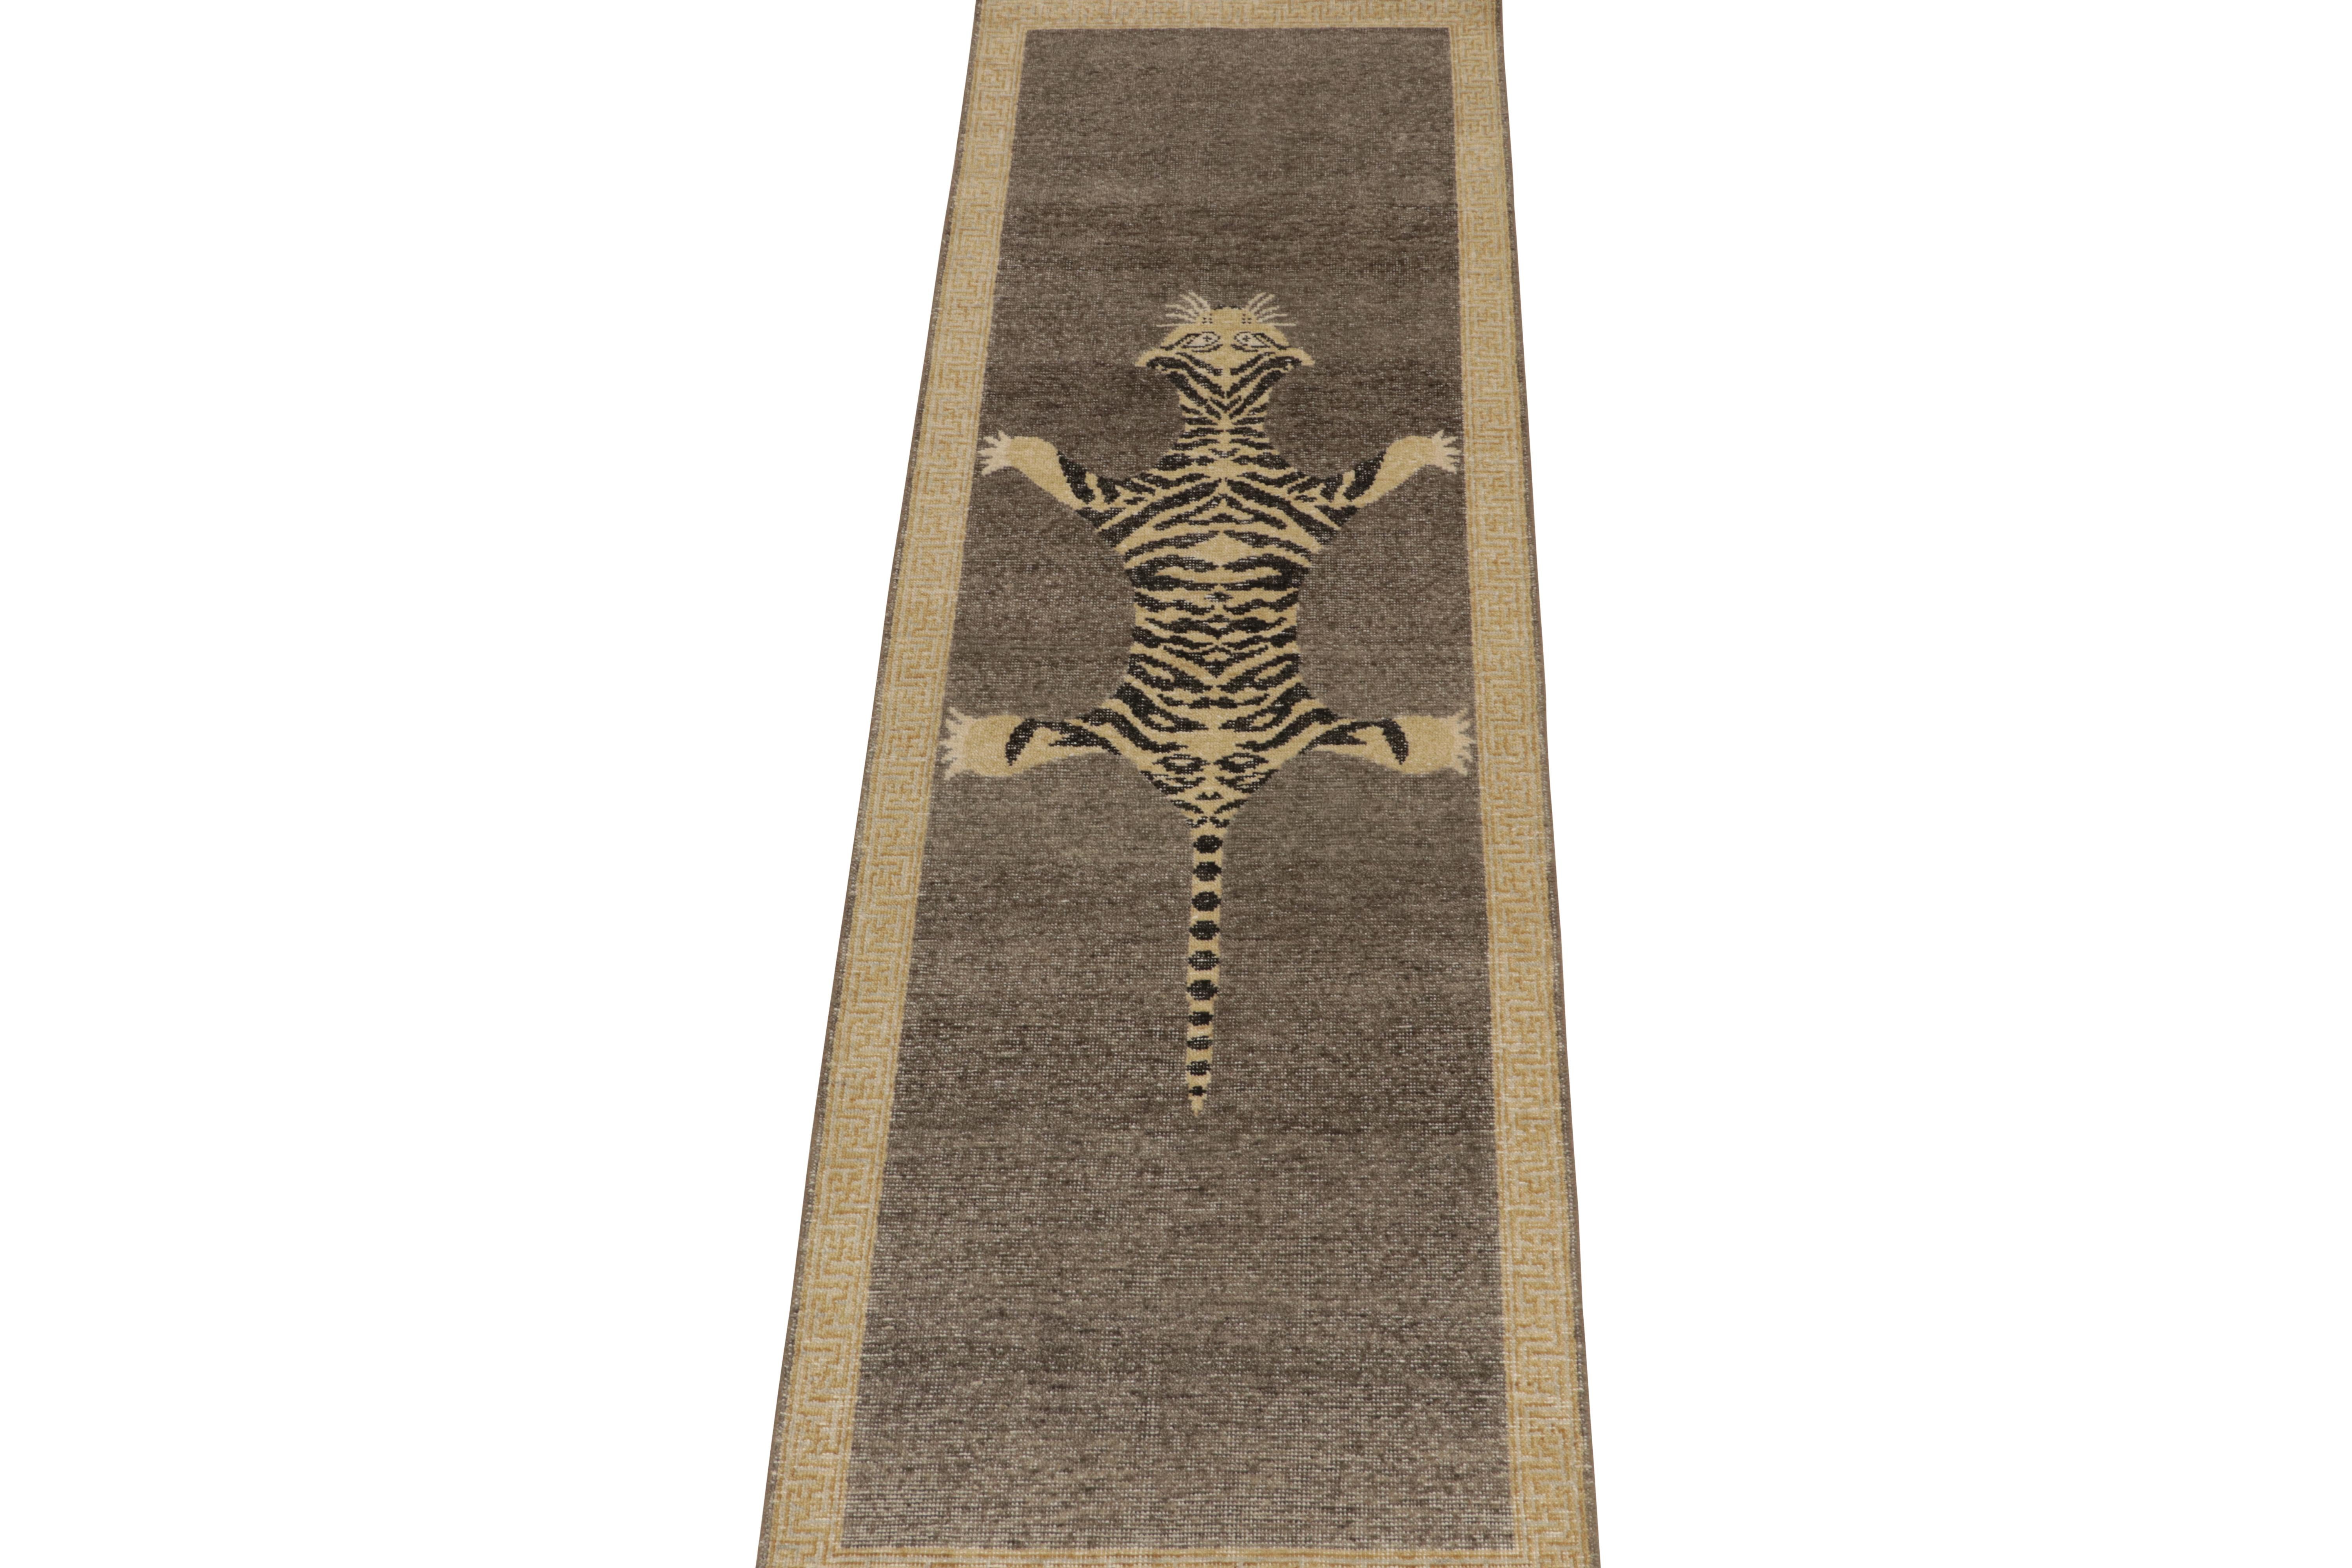 Ce chemin de table 3x10 en laine nouée à la main de la Collection Homage de Rug & Kilim reprend le style ancestral des tapis en peau de tigre.

Plus loin dans le Design : 

Cette pièce est inspirée des anciens tapis indiens en peau de tigre, d'une